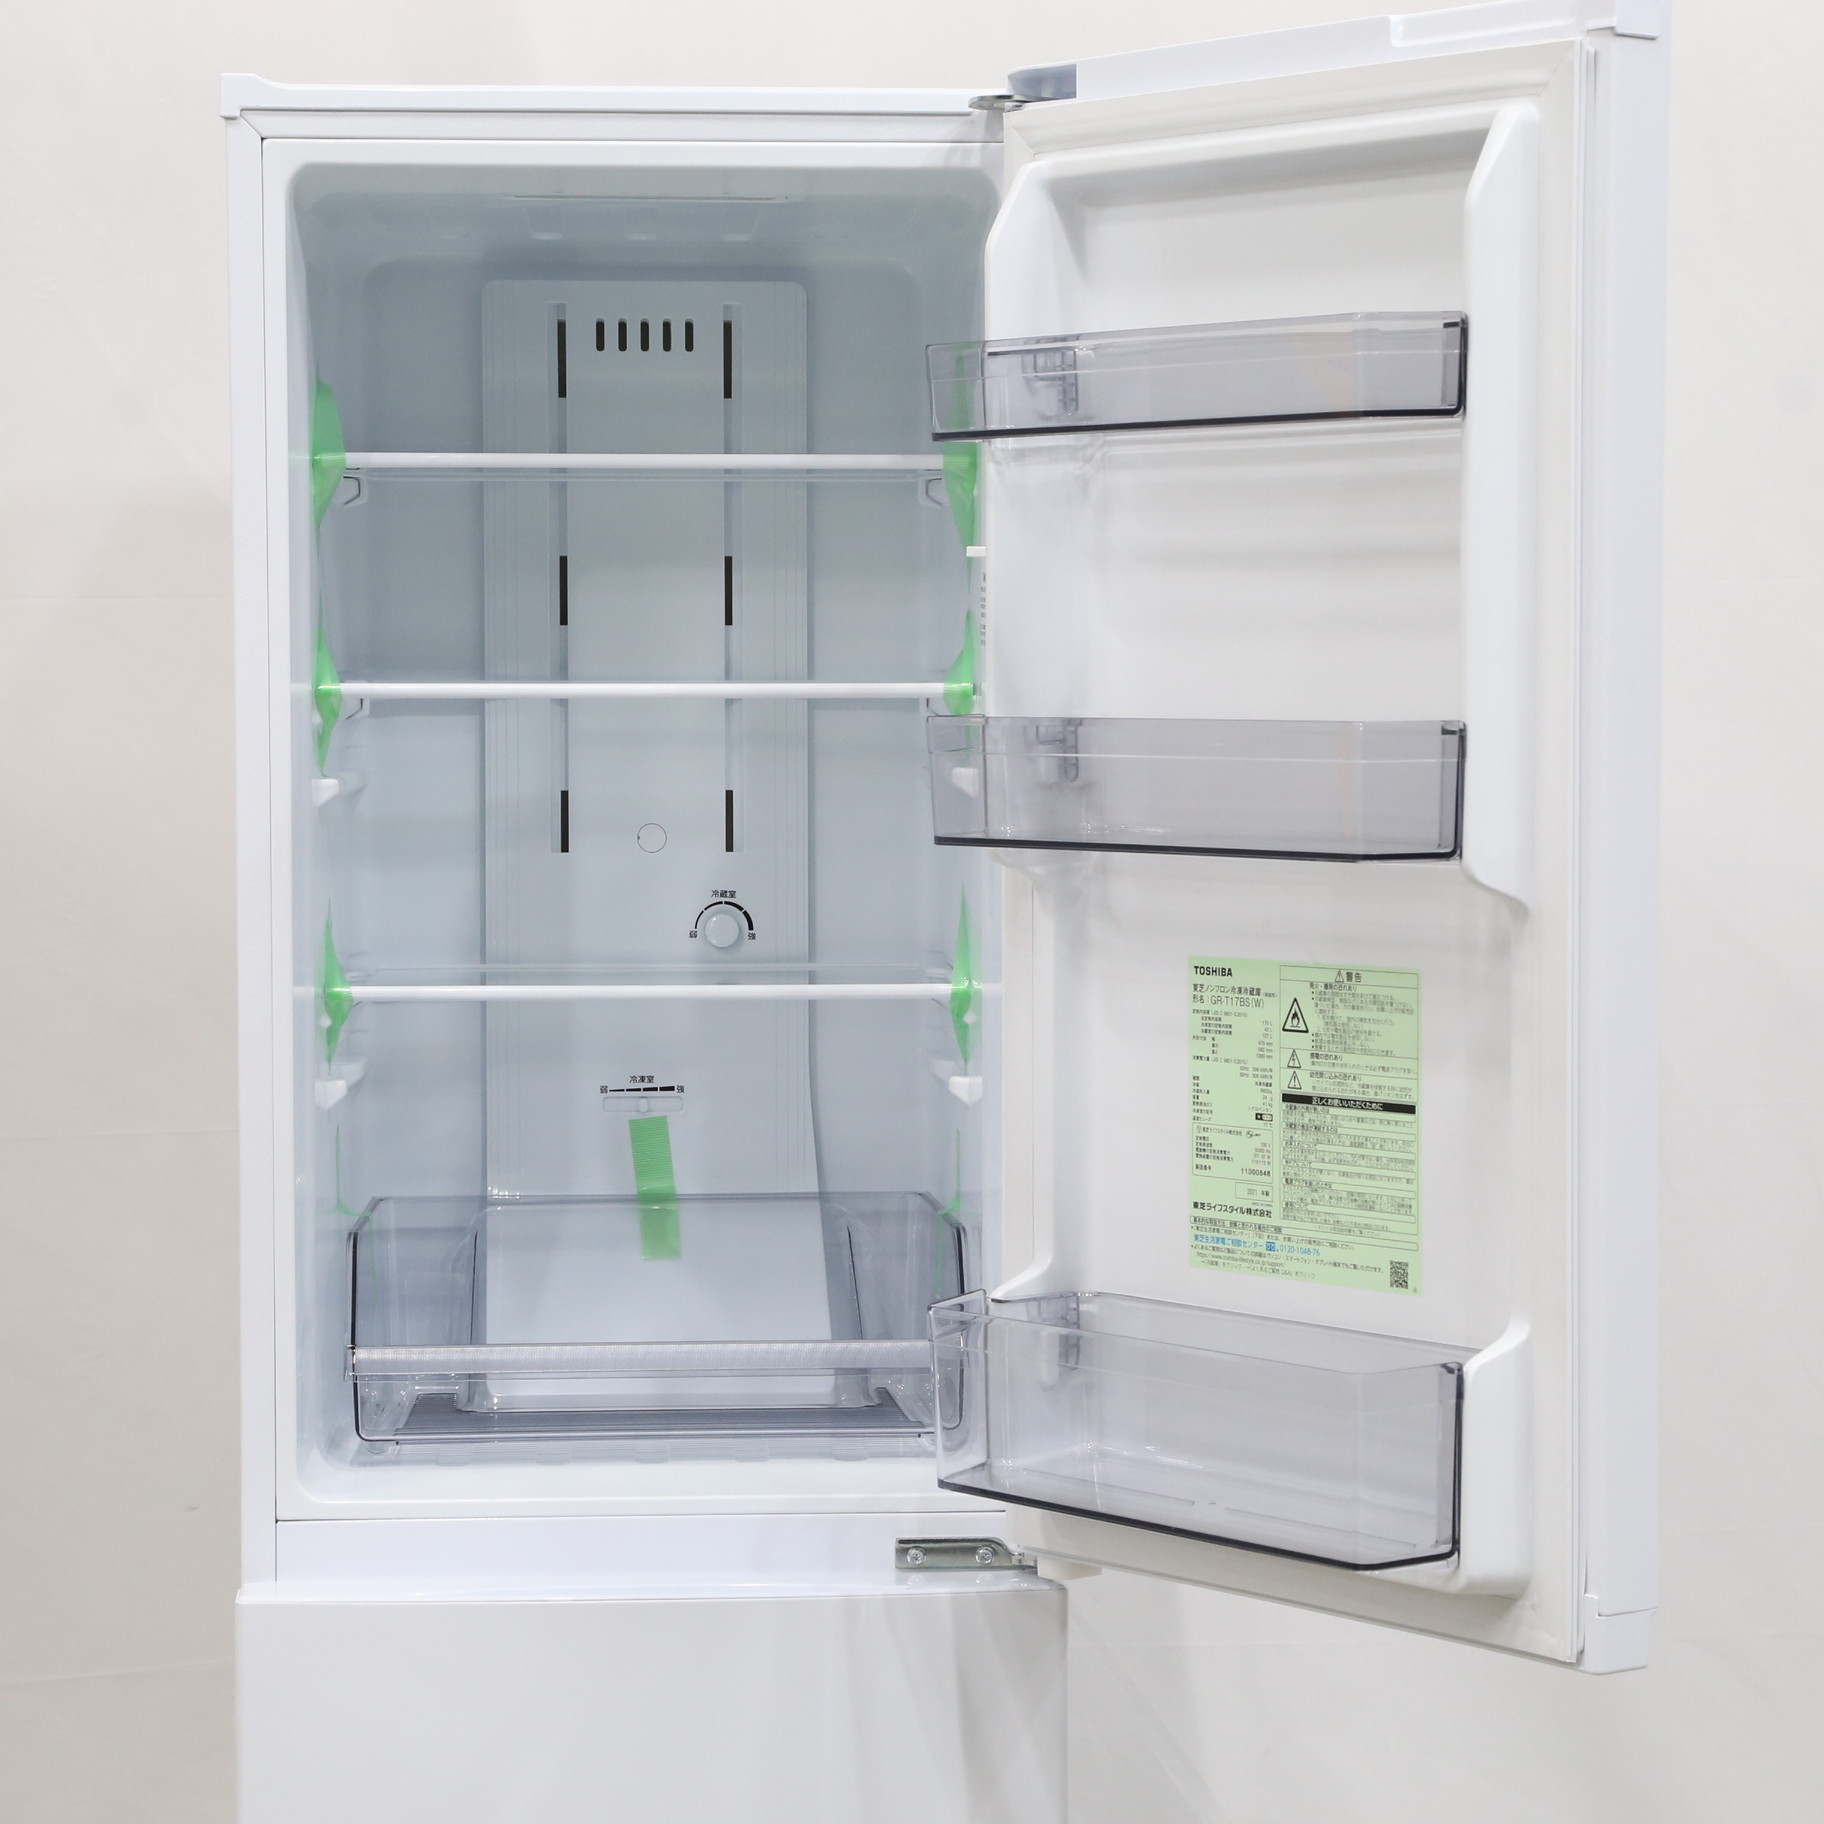 プレミア商品 GR-NF377G(XS)【配送無料】 東芝ノンフロン冷凍冷蔵庫